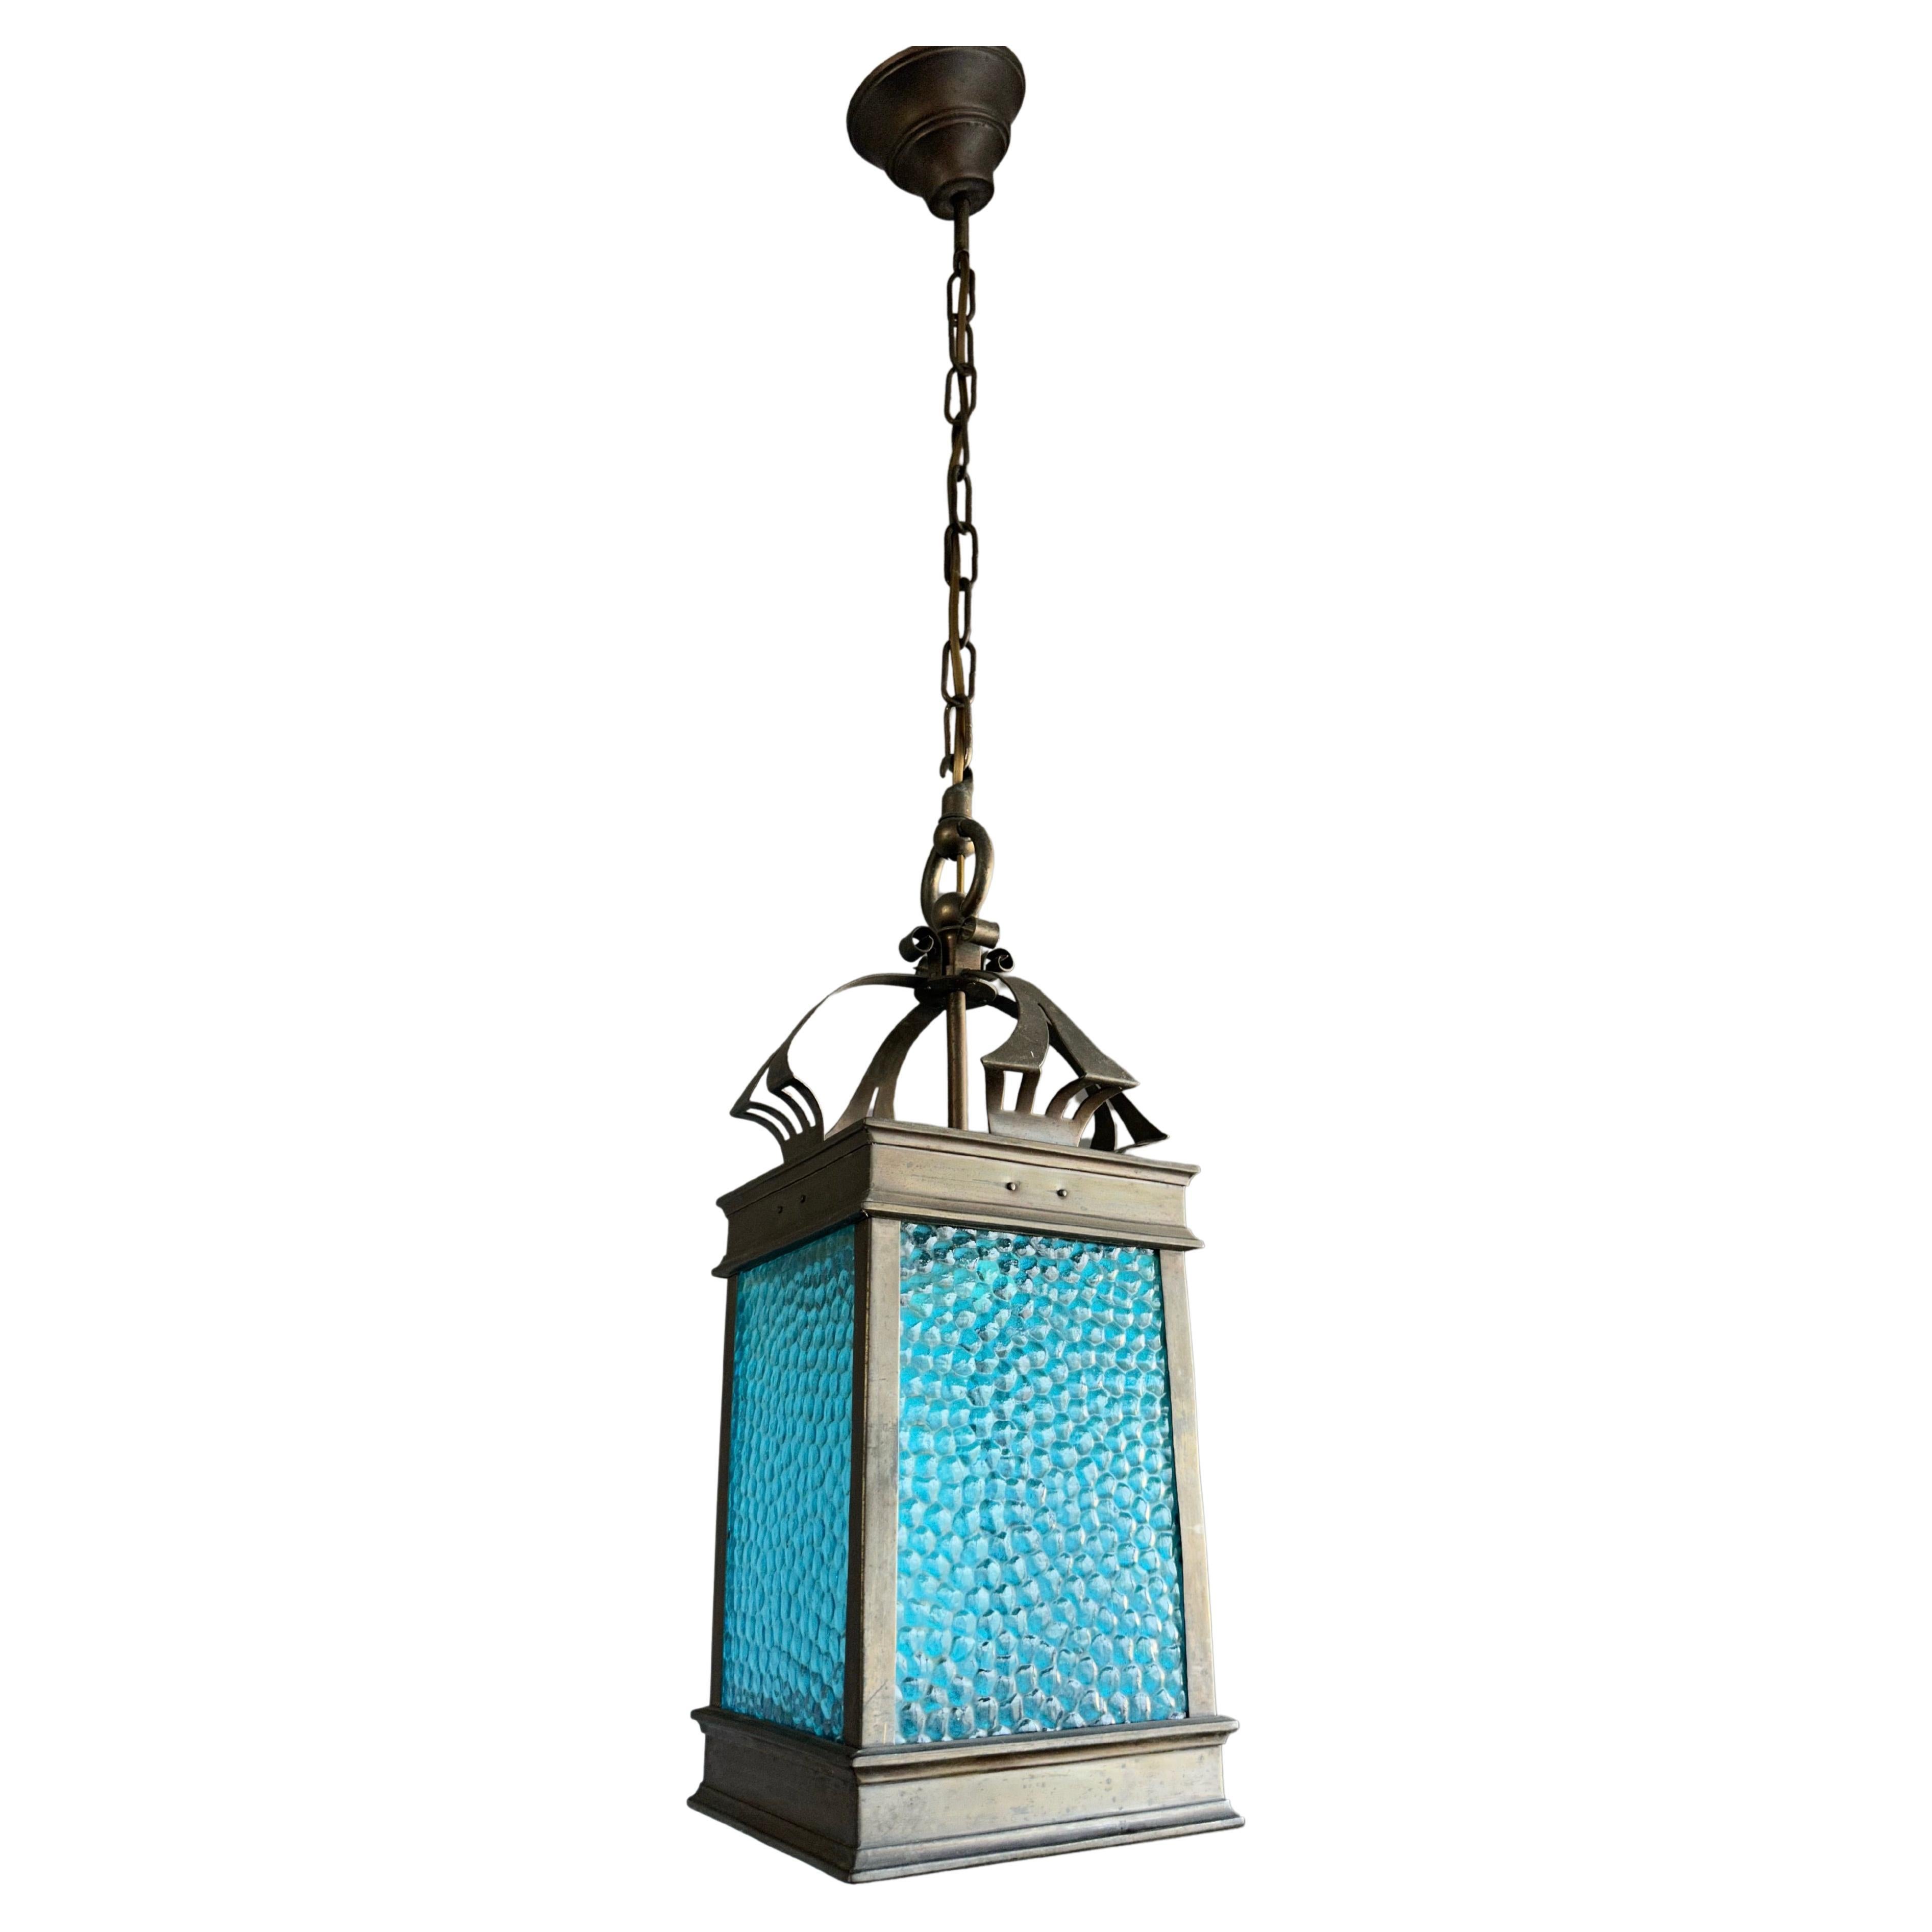 Rare Arts & Crafts Pendant Light / Lantern w. Copper & Sea Blue Cathedral Glass 